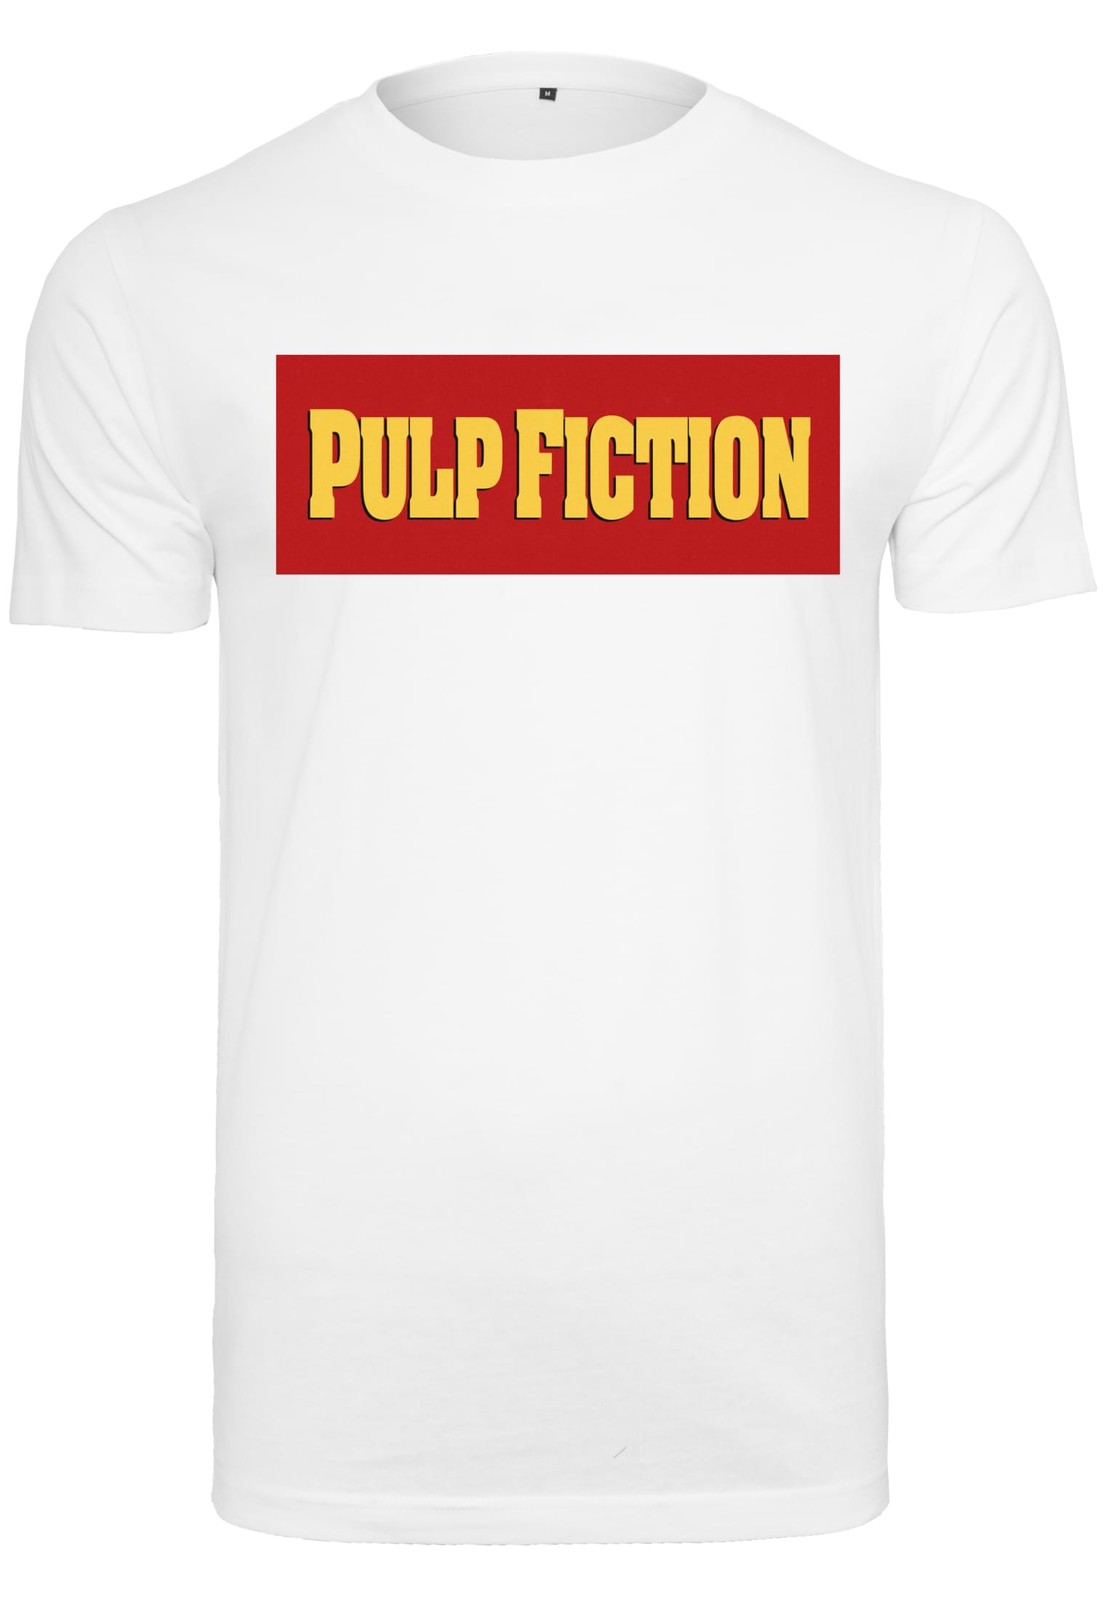 Tričko s logem Pulp Fiction bílé